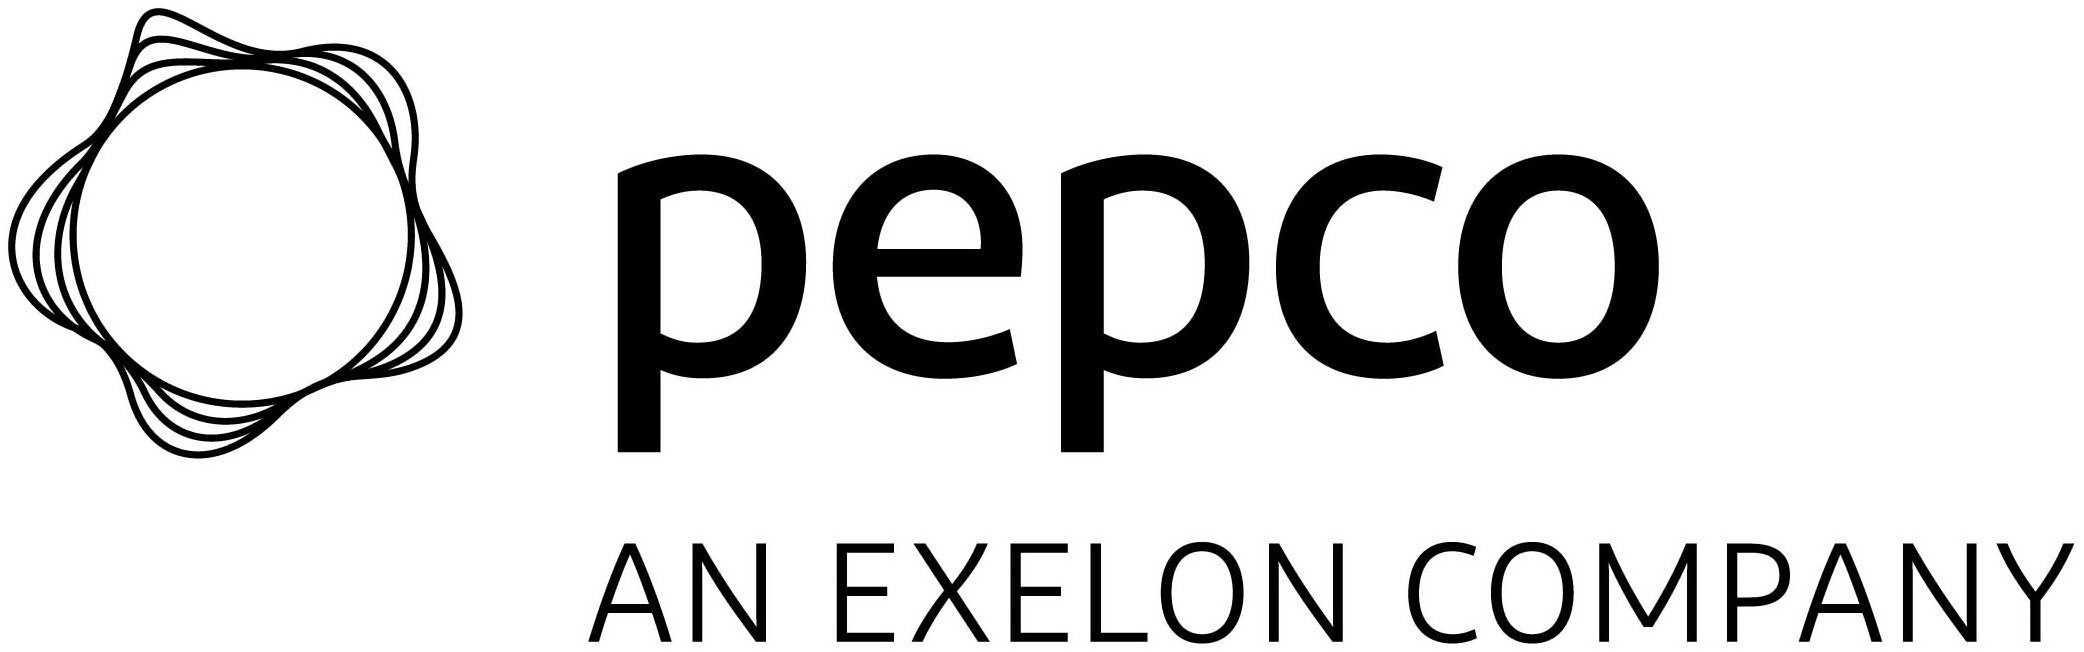 PEPCO AN EXELON COMPANY